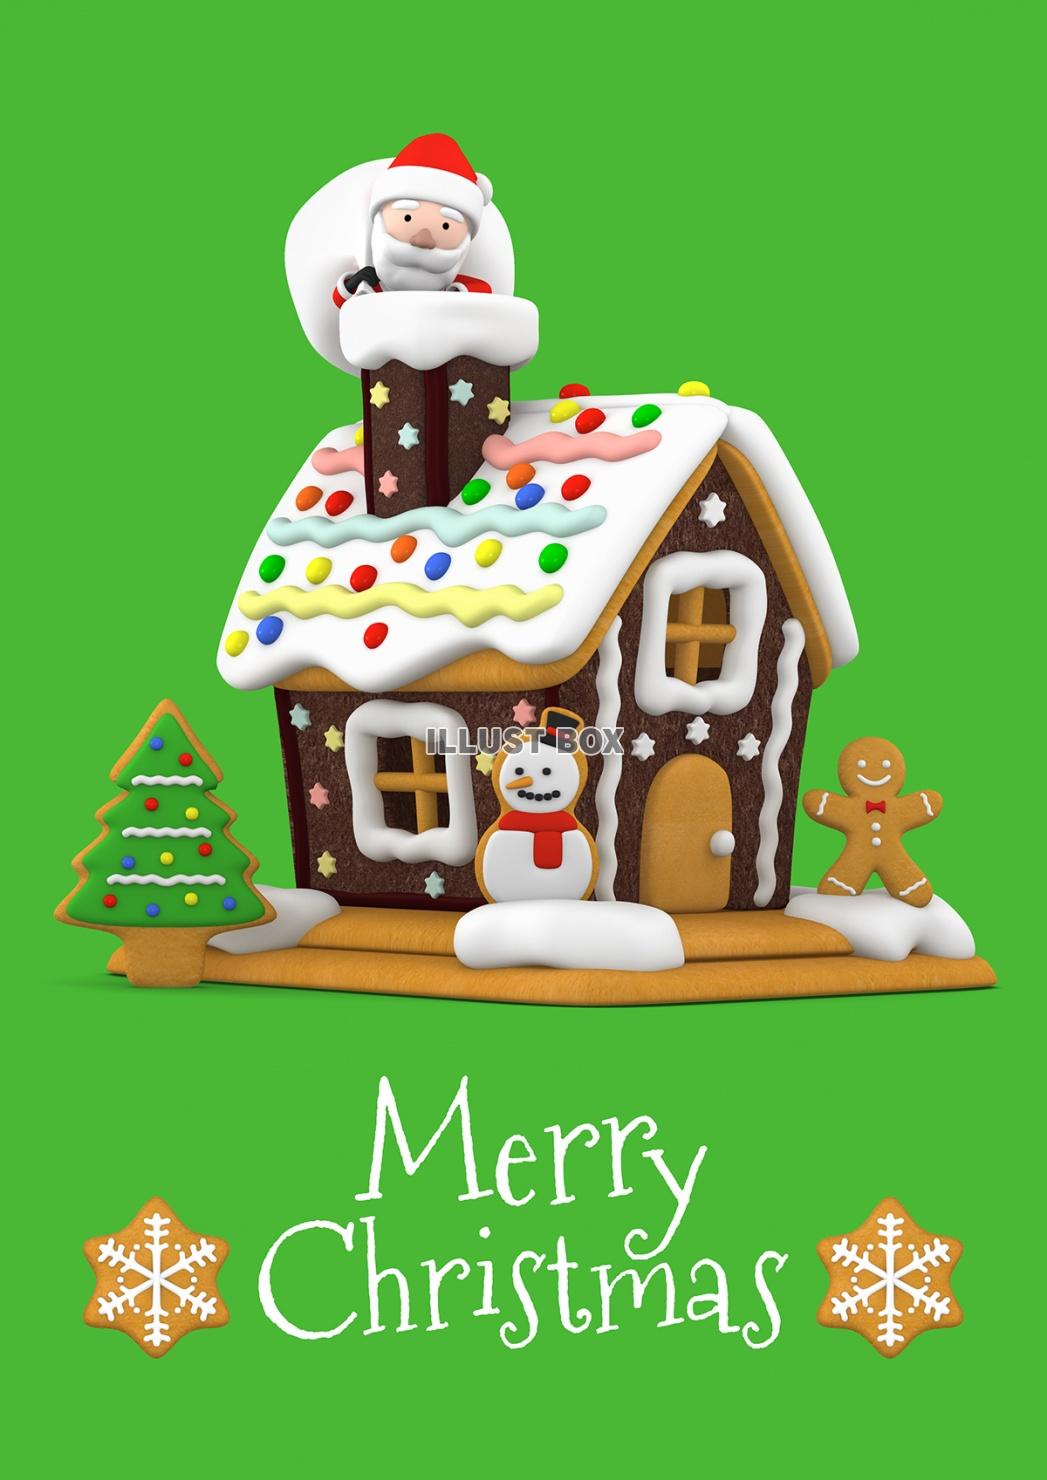 無料イラスト クリスマス お菓子の家とサンタクロース 3dイラスト03